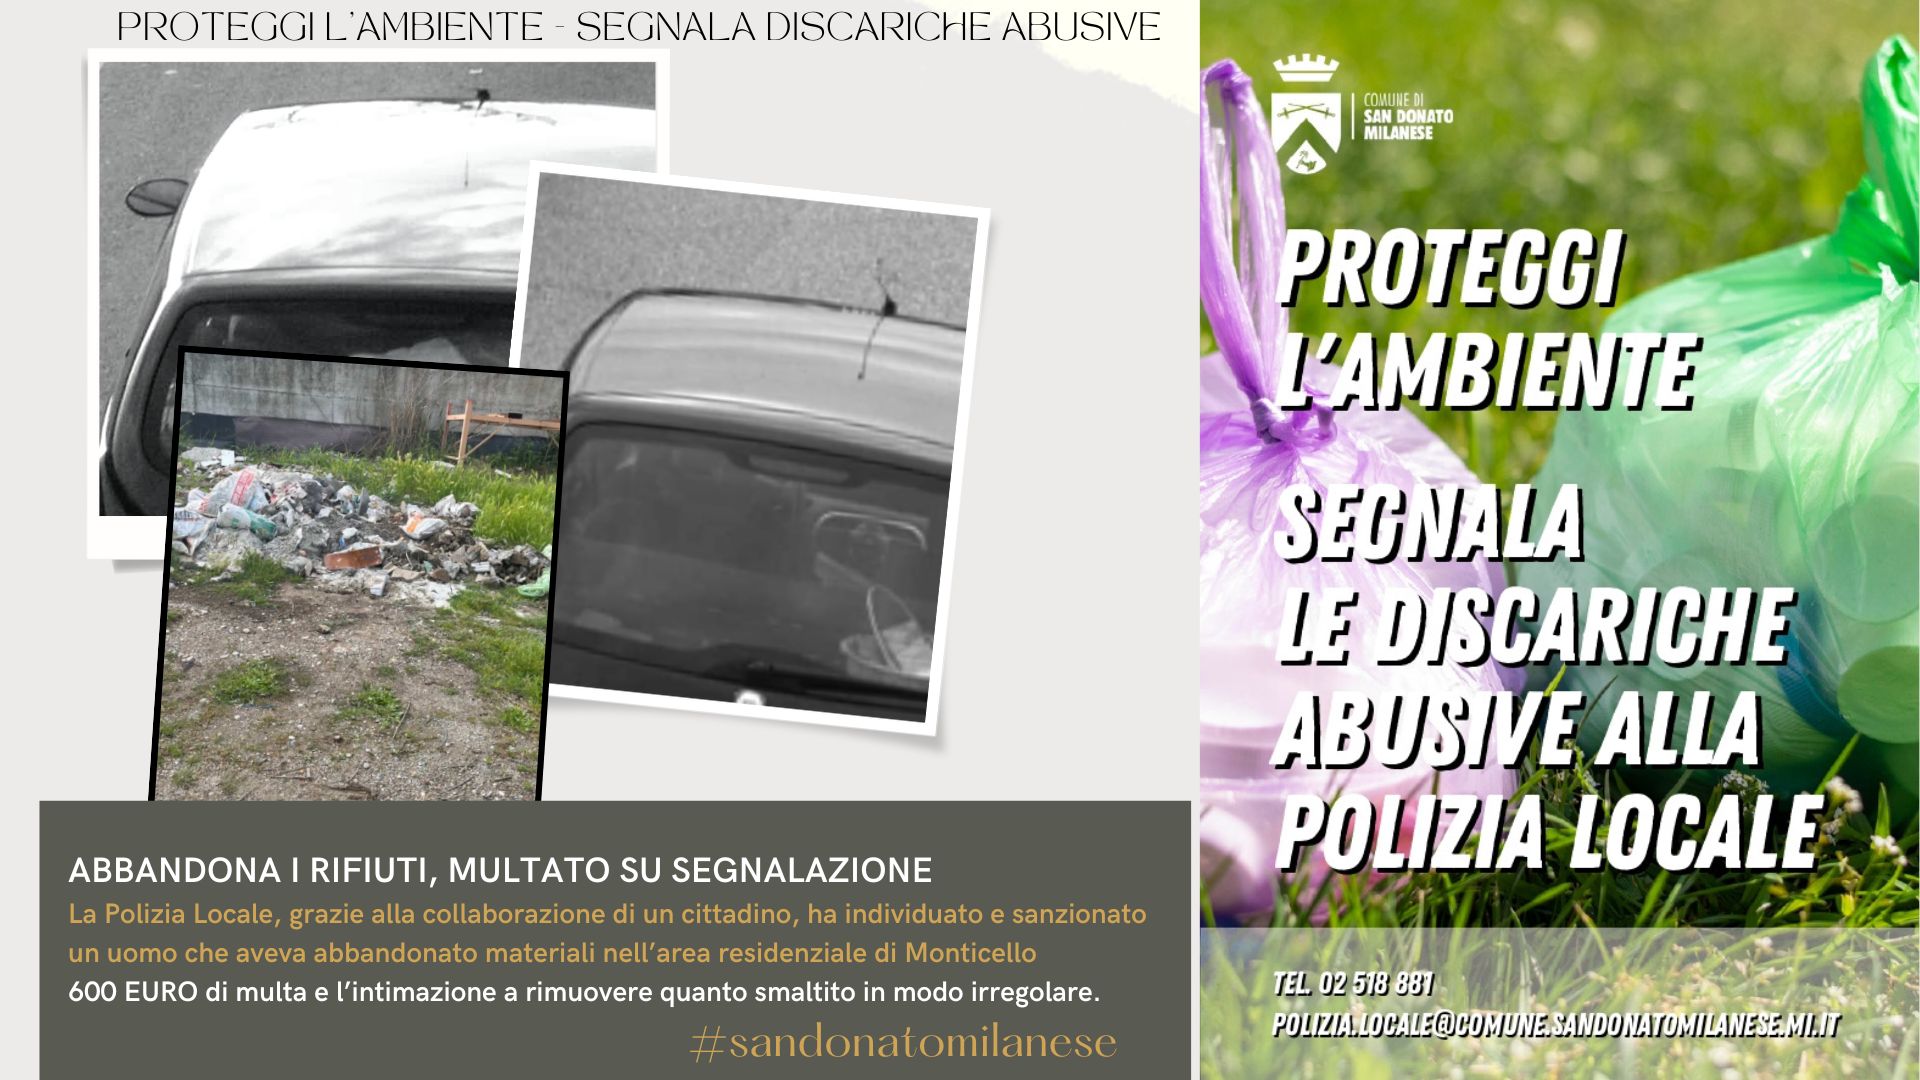 Proteggiamo l'a,biente di San Donato Milanese - Segnaliamo discariche abusive alla Polizia Locale